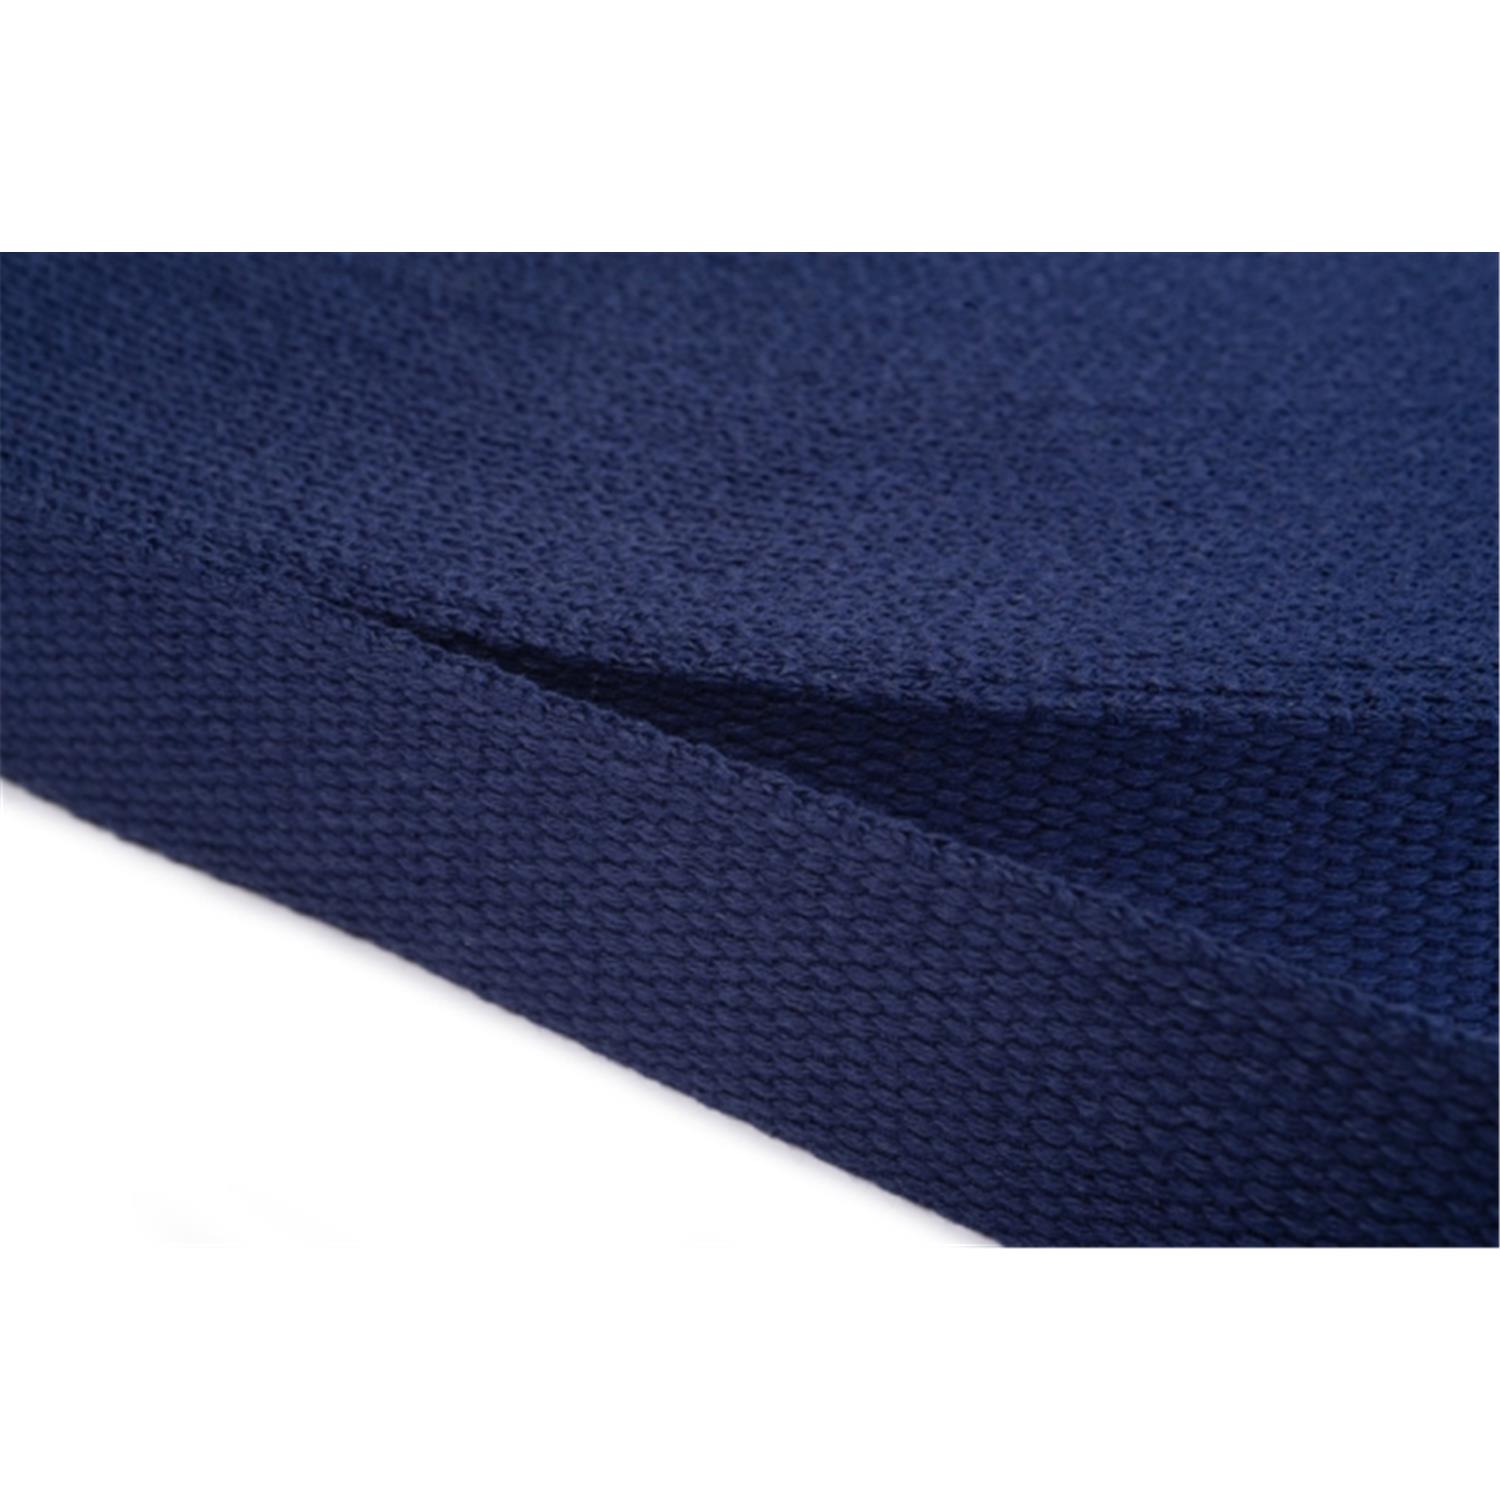 Gurtband aus Baumwolle 15mm in 20 Farben 13 - dunkelblau 6 Meter